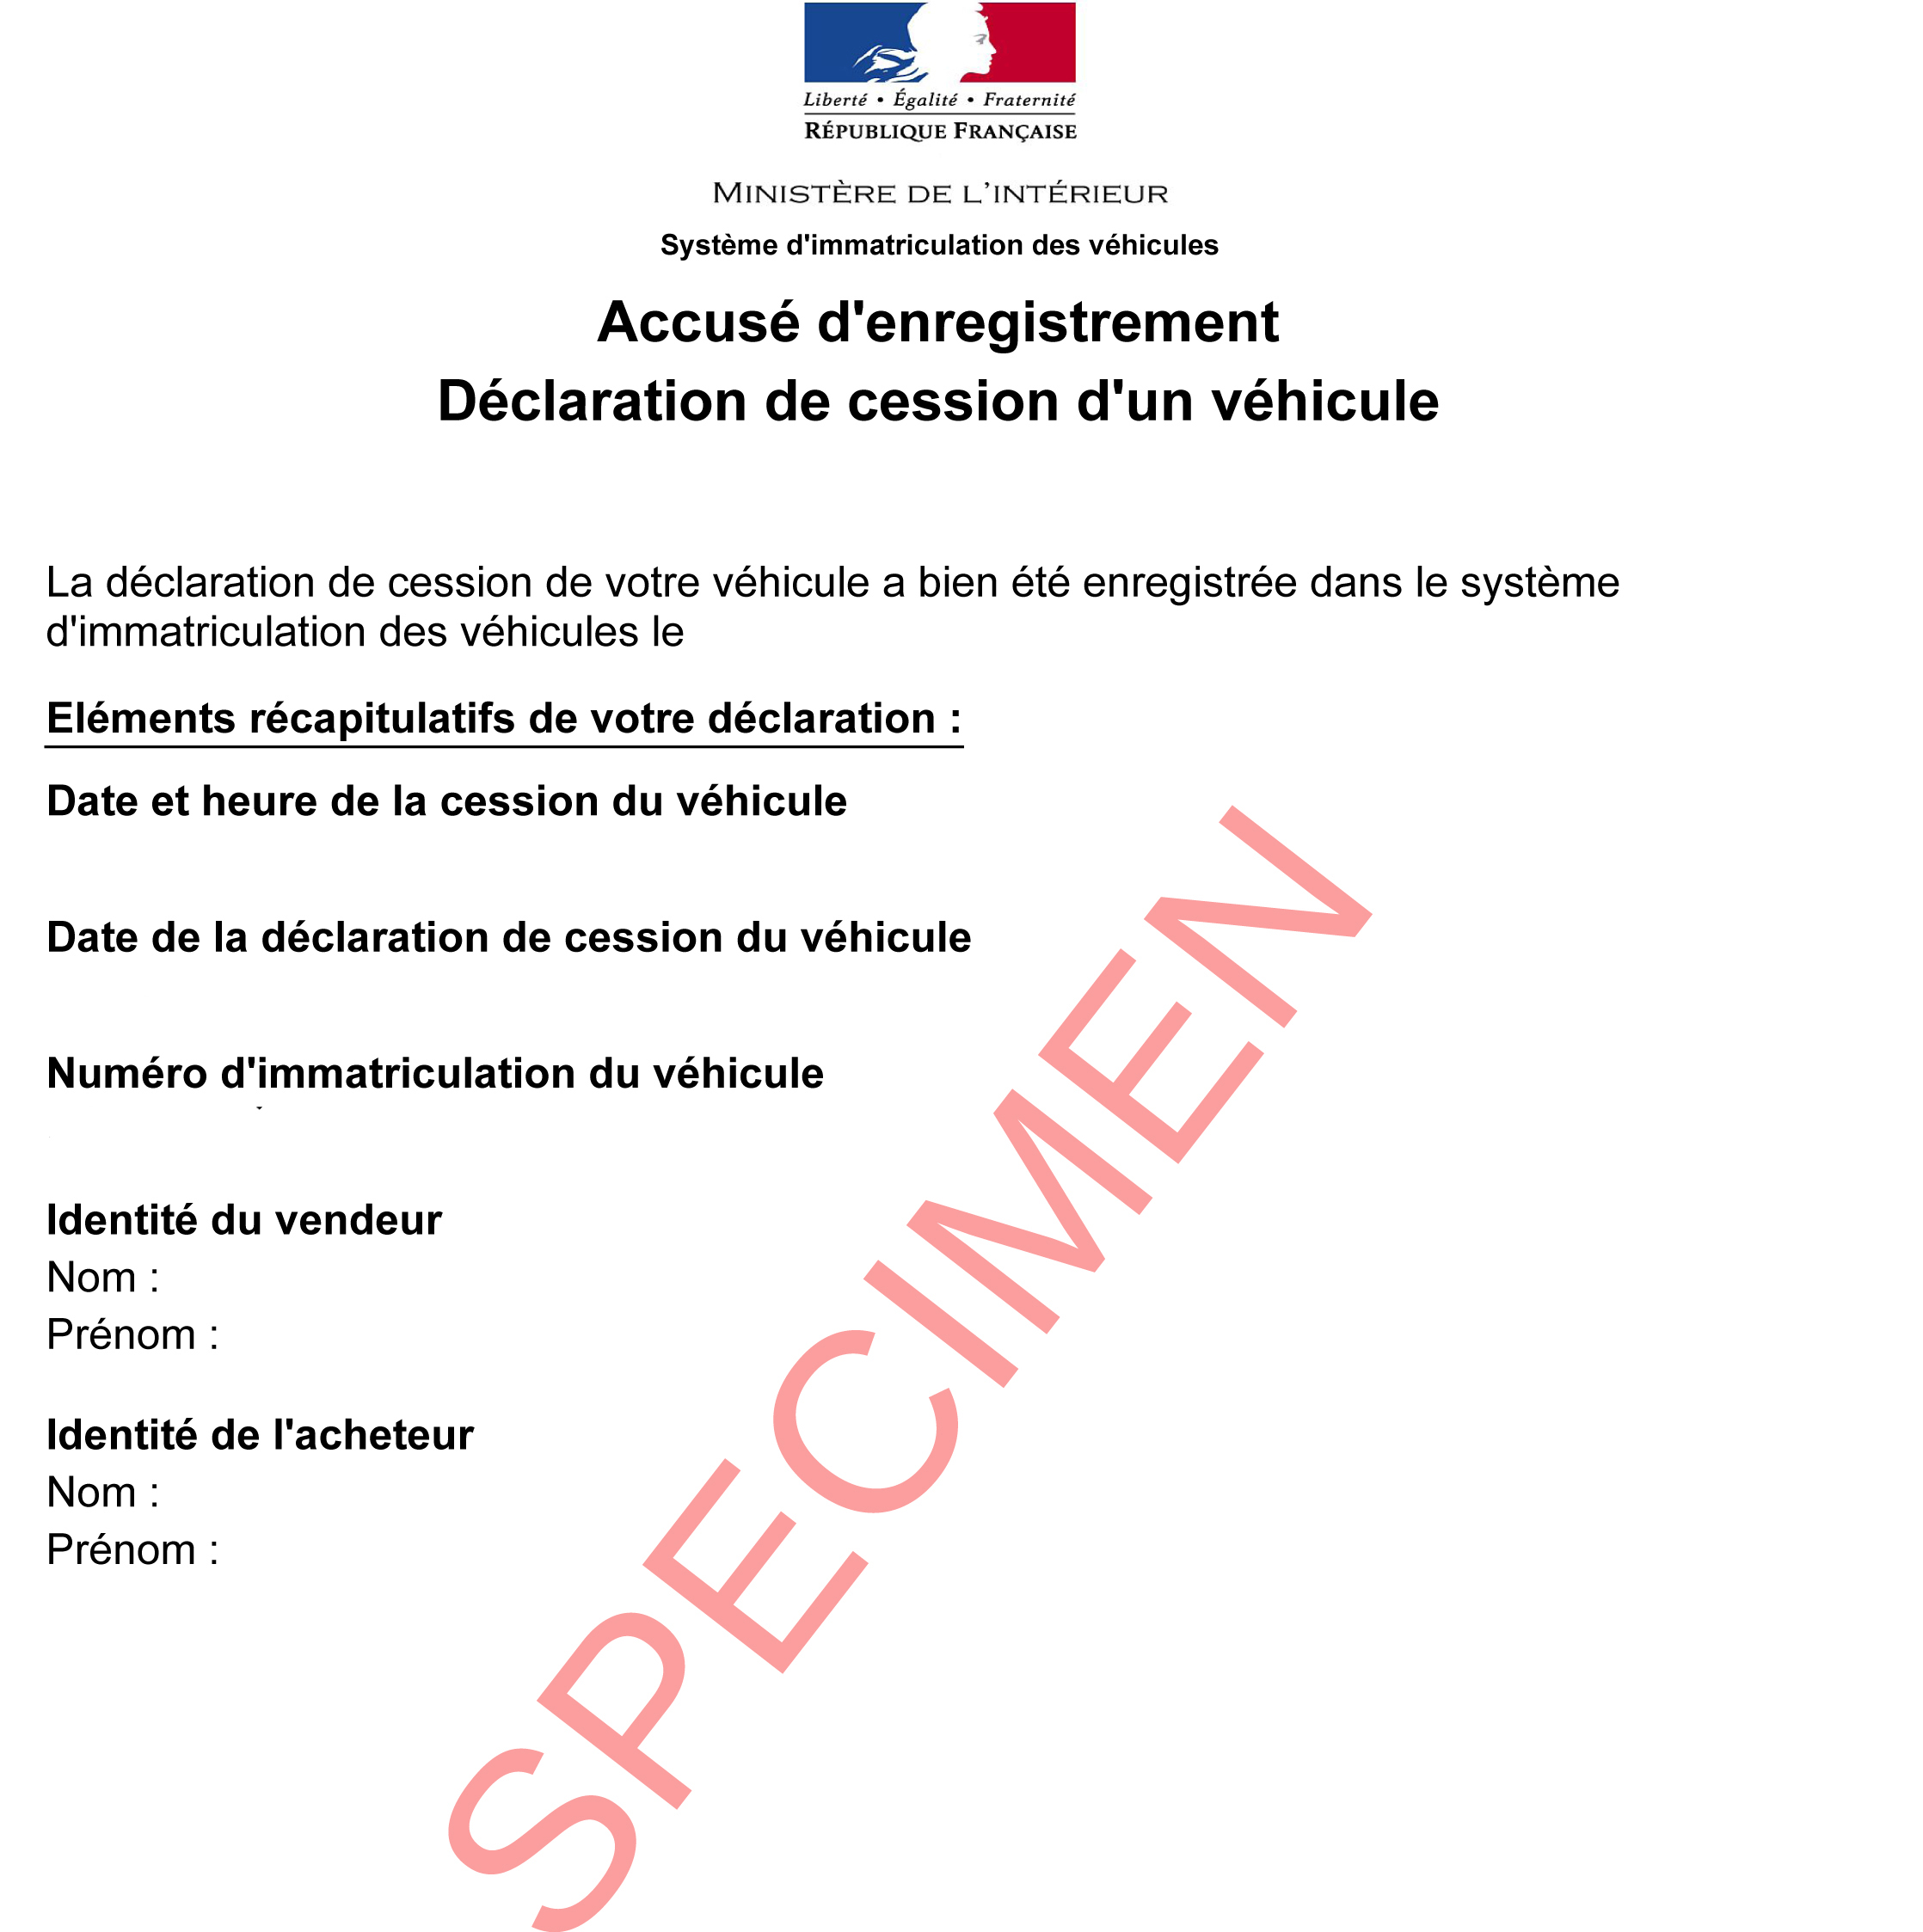 Exemple d’un accusé d’enregistrement de la Déclaration de cession d’un véhicule.